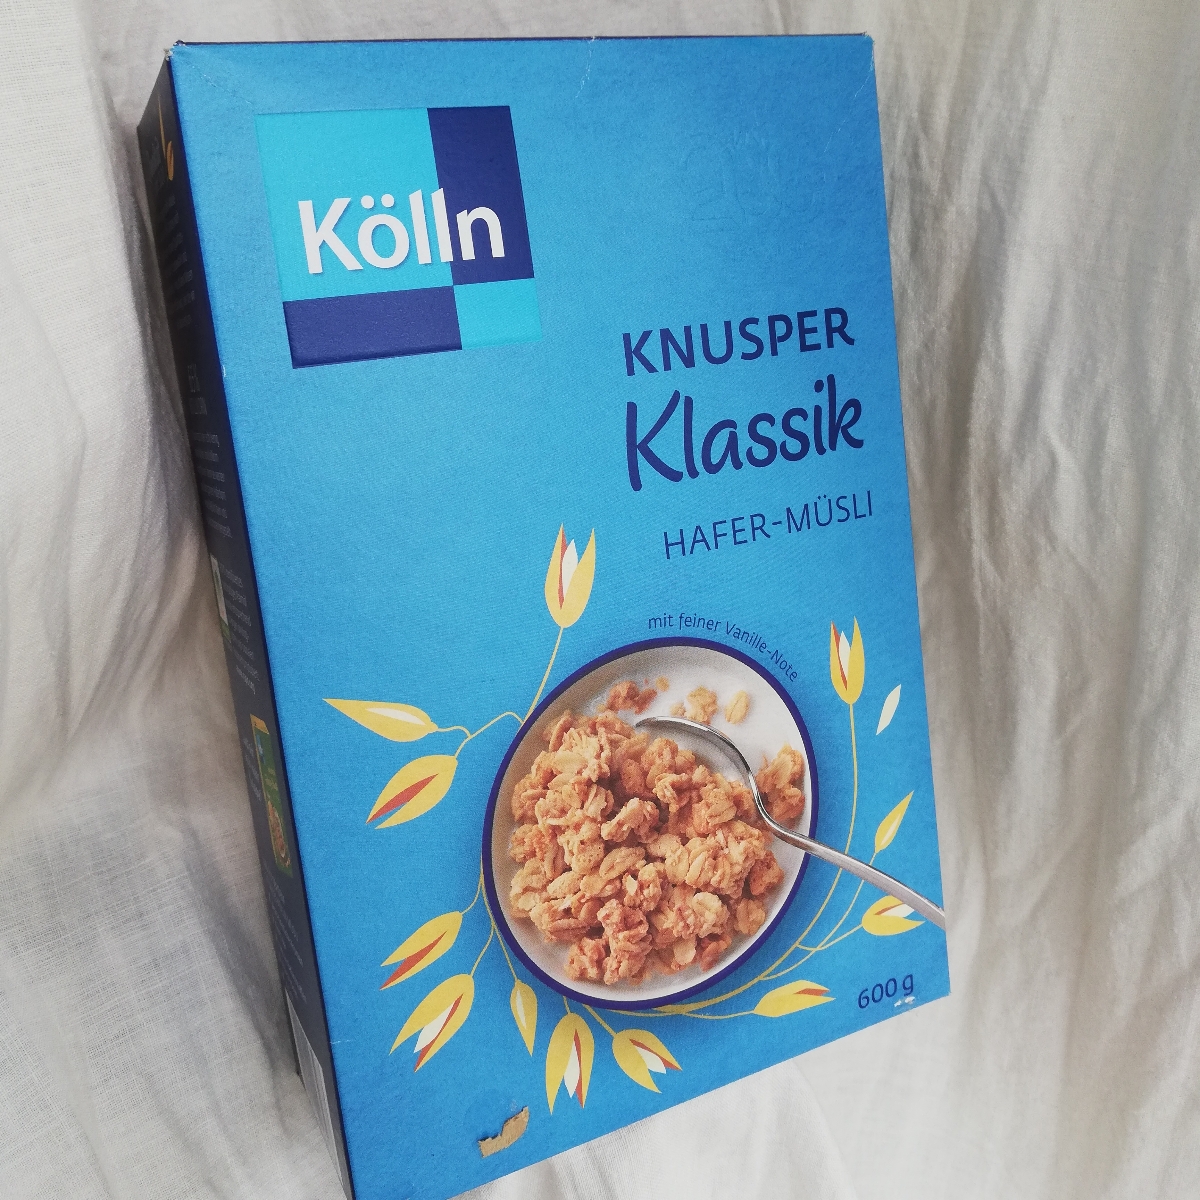 Kölln Knusper Klassik Hafer-Müsli Reviews | abillion